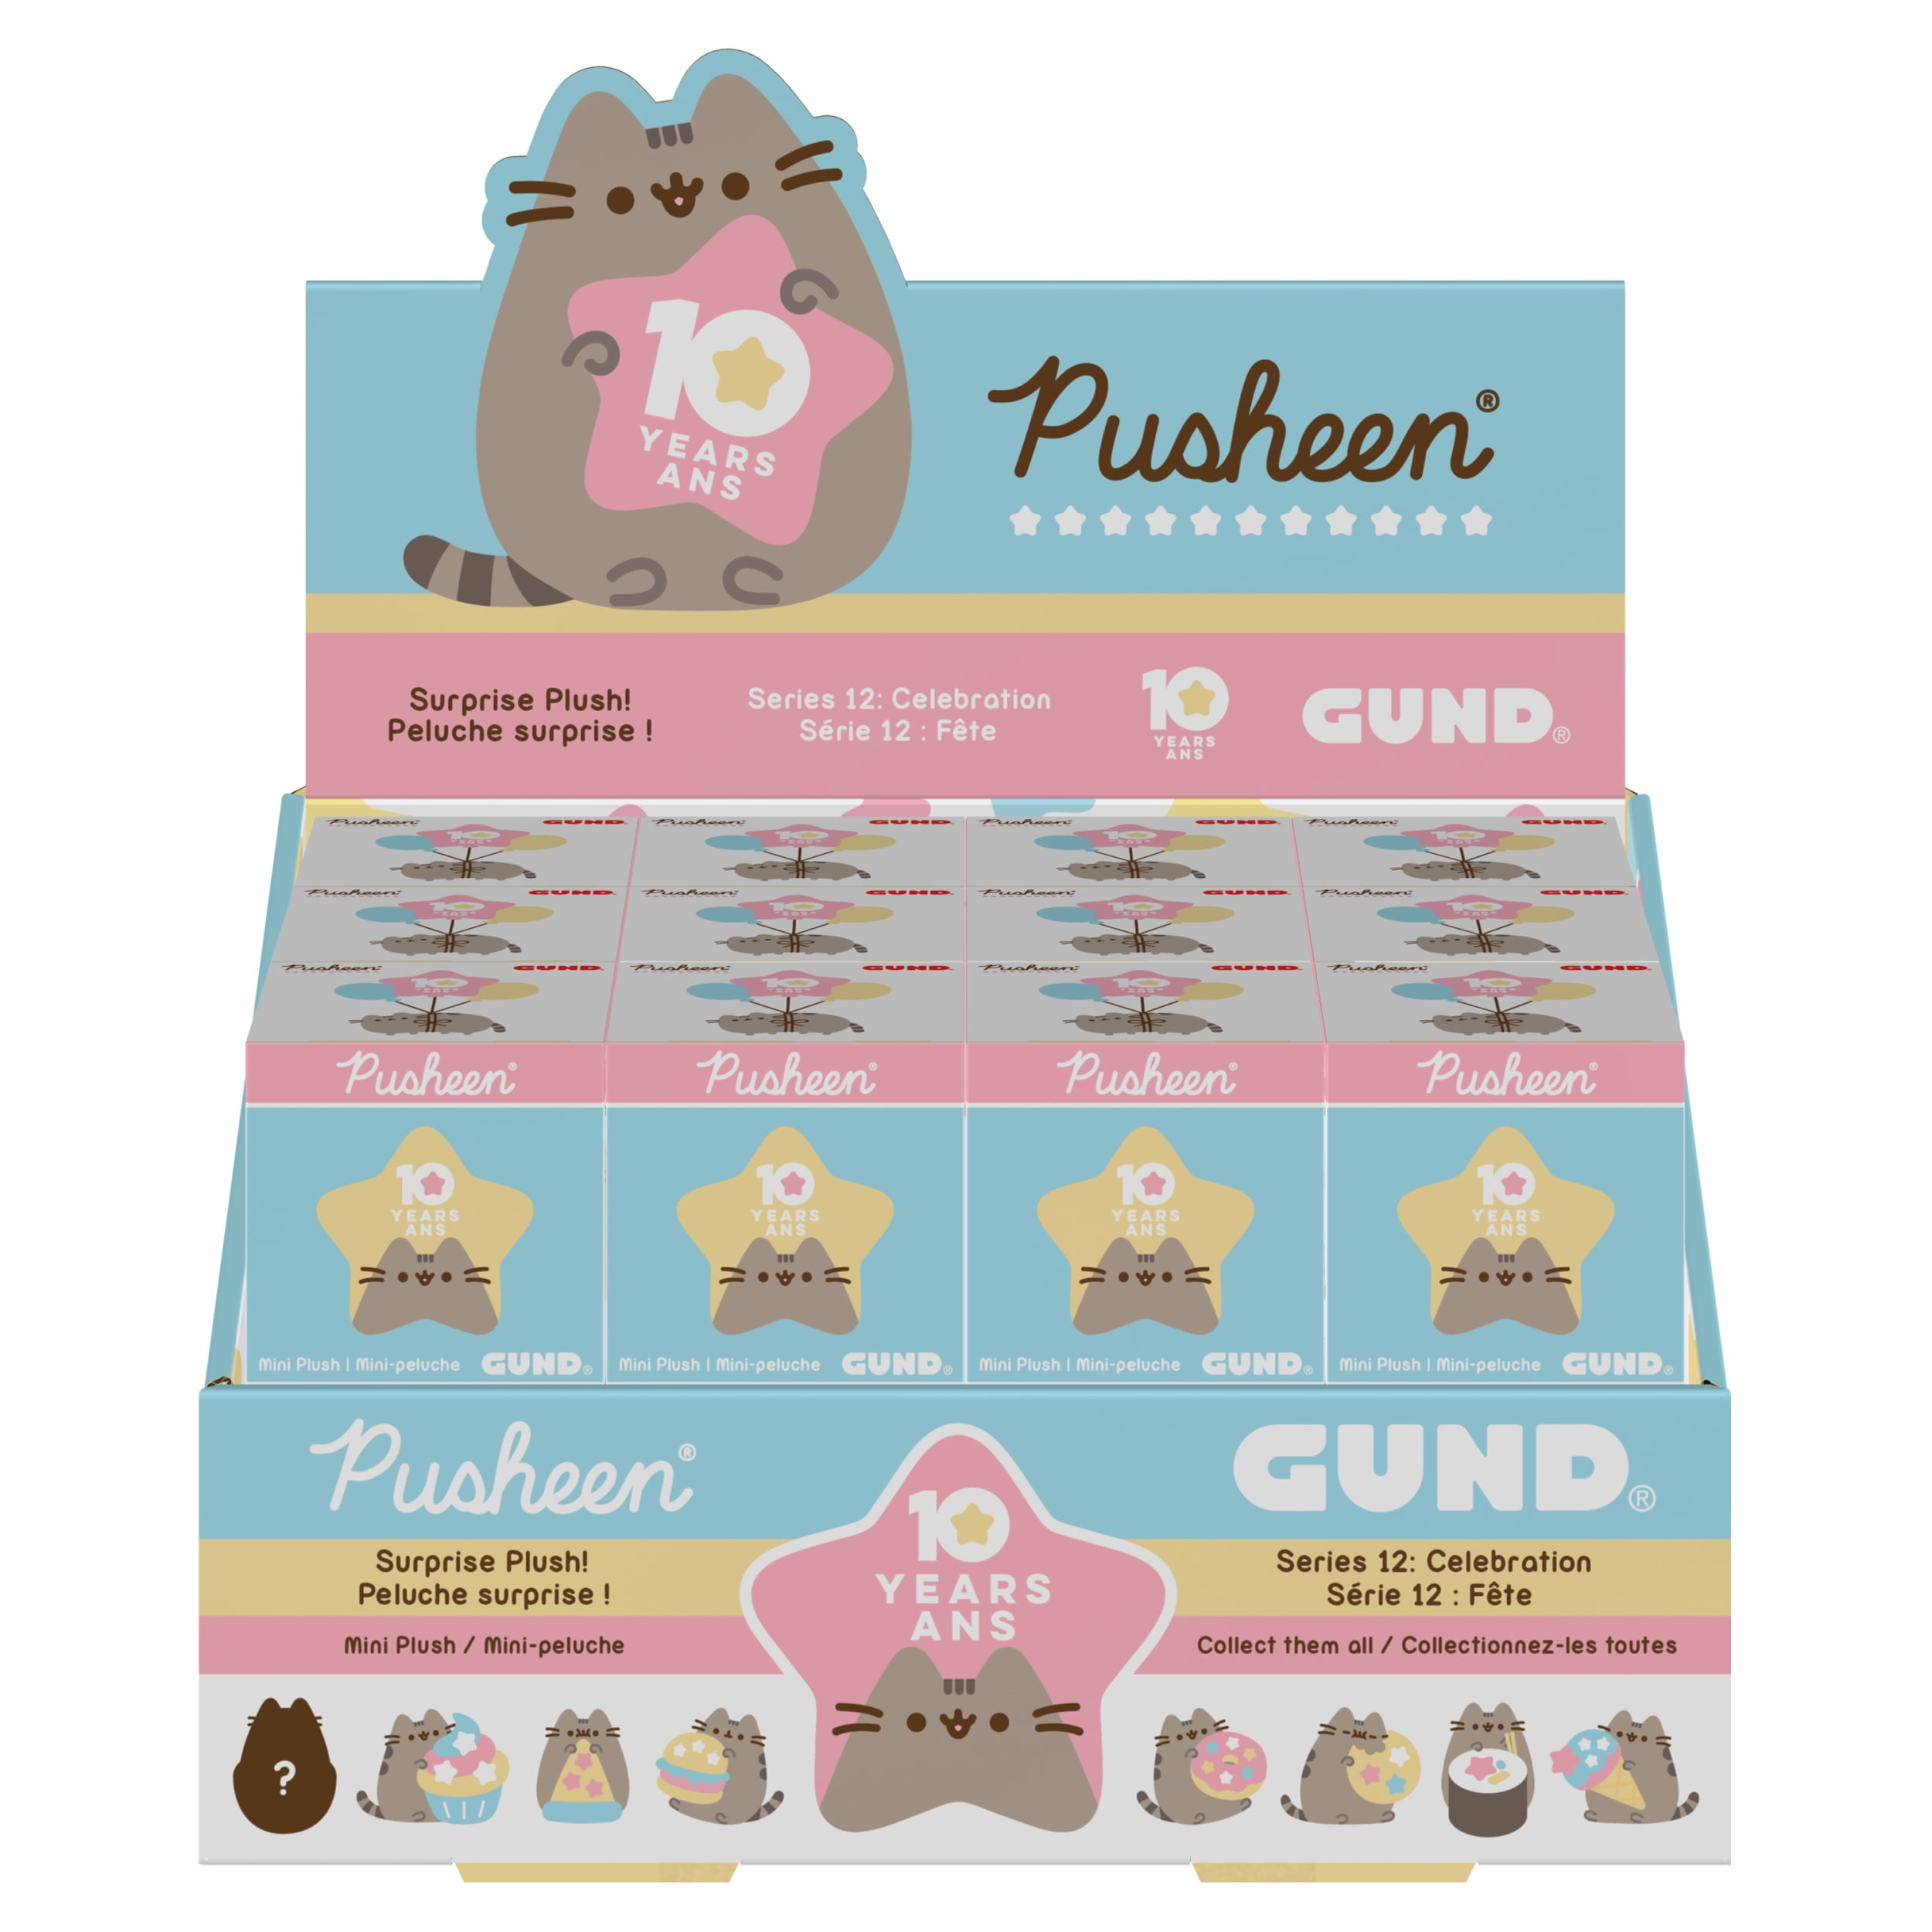 Gund NEW Pusheen Blind Box SUSHI Celebration Anniversary Plush Cat Series 12 